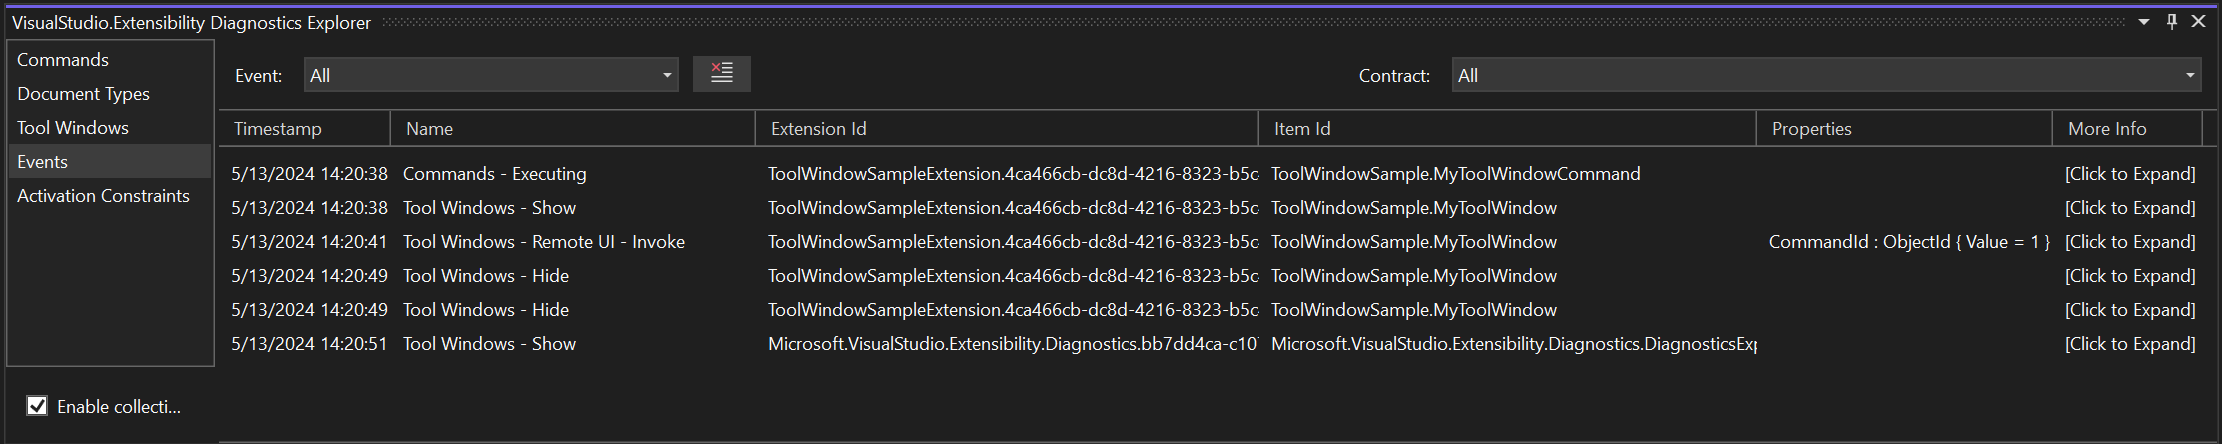 VisualStudio的事件选项卡的屏幕截图。Extensibility Diagnostics Explorer，显示与执行命令和隐藏/显示工具窗口相关的几个事件。